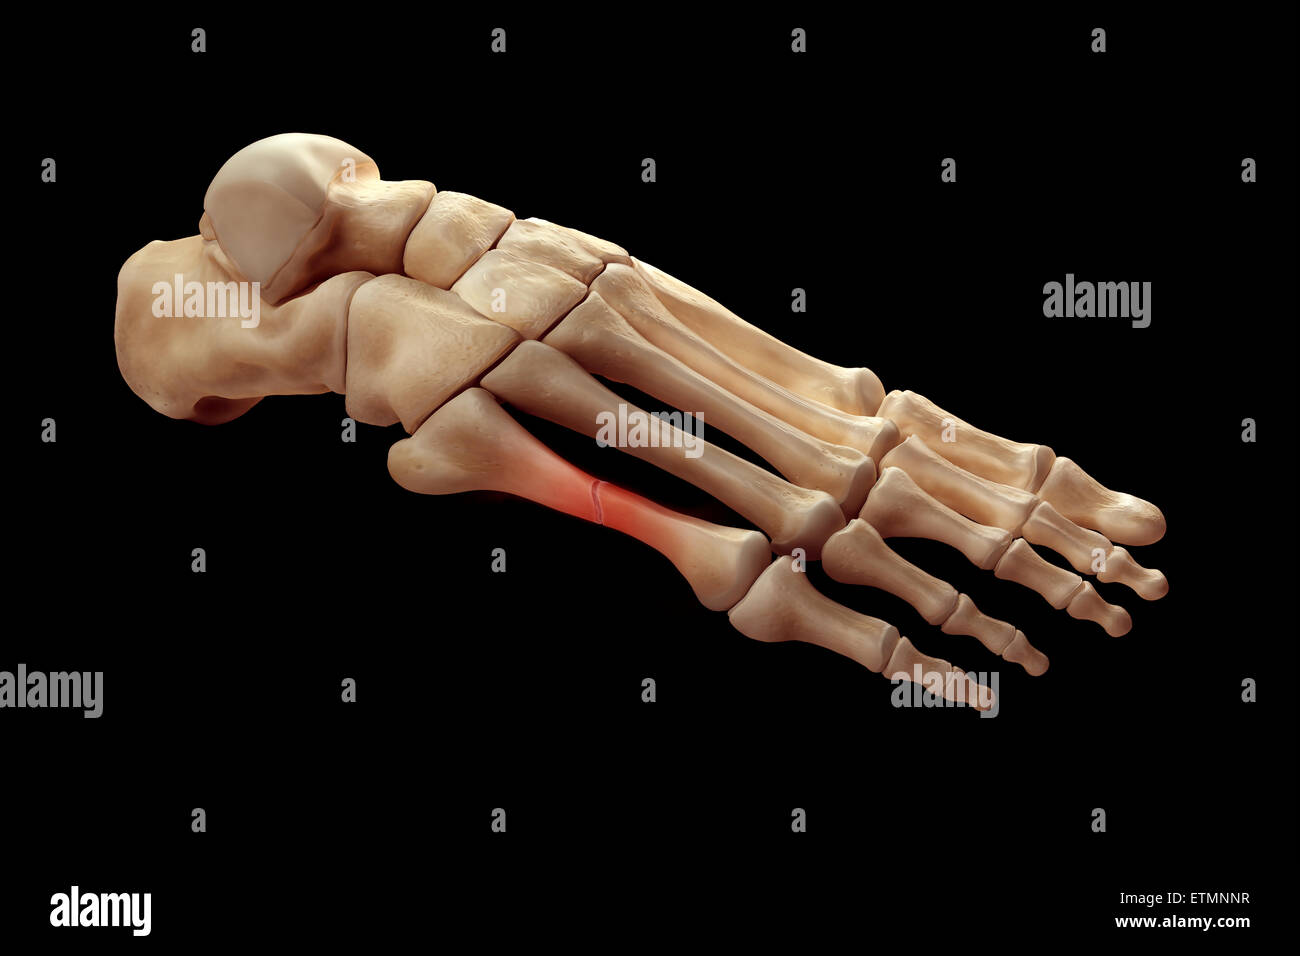 Darstellung der Knochen des Fußes mit einer Pause in einem Mittelfußknochen hervorgehoben. Stockfoto